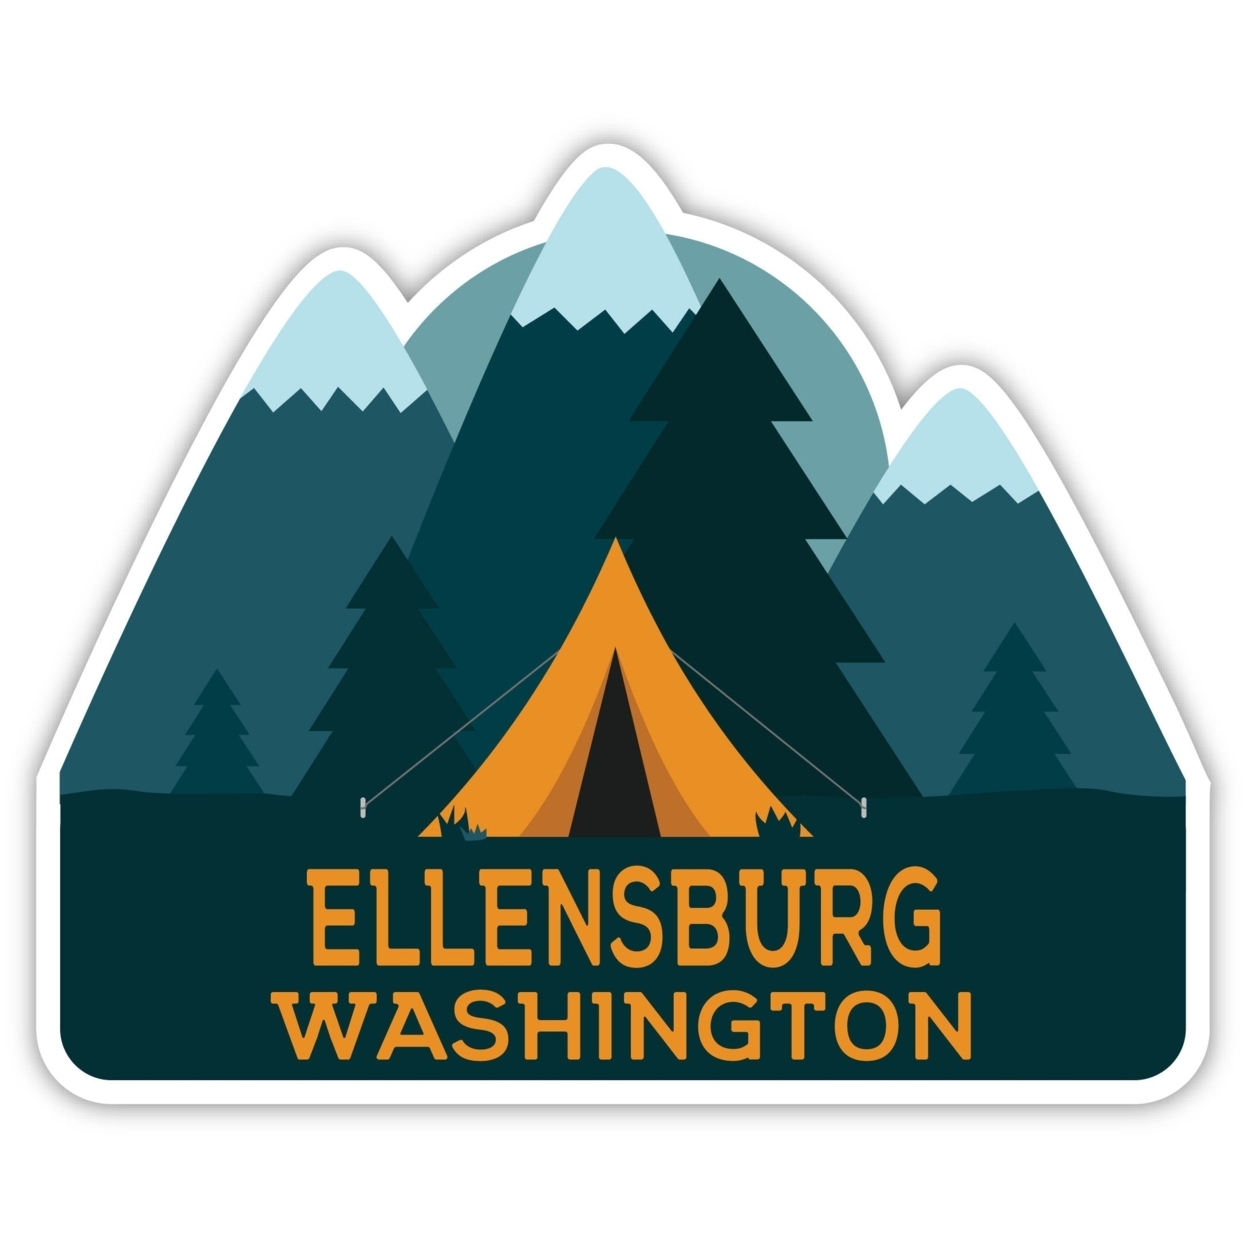 Ellensburg Washington Souvenir Decorative Stickers (Choose Theme And Size) - Single Unit, 2-Inch, Tent